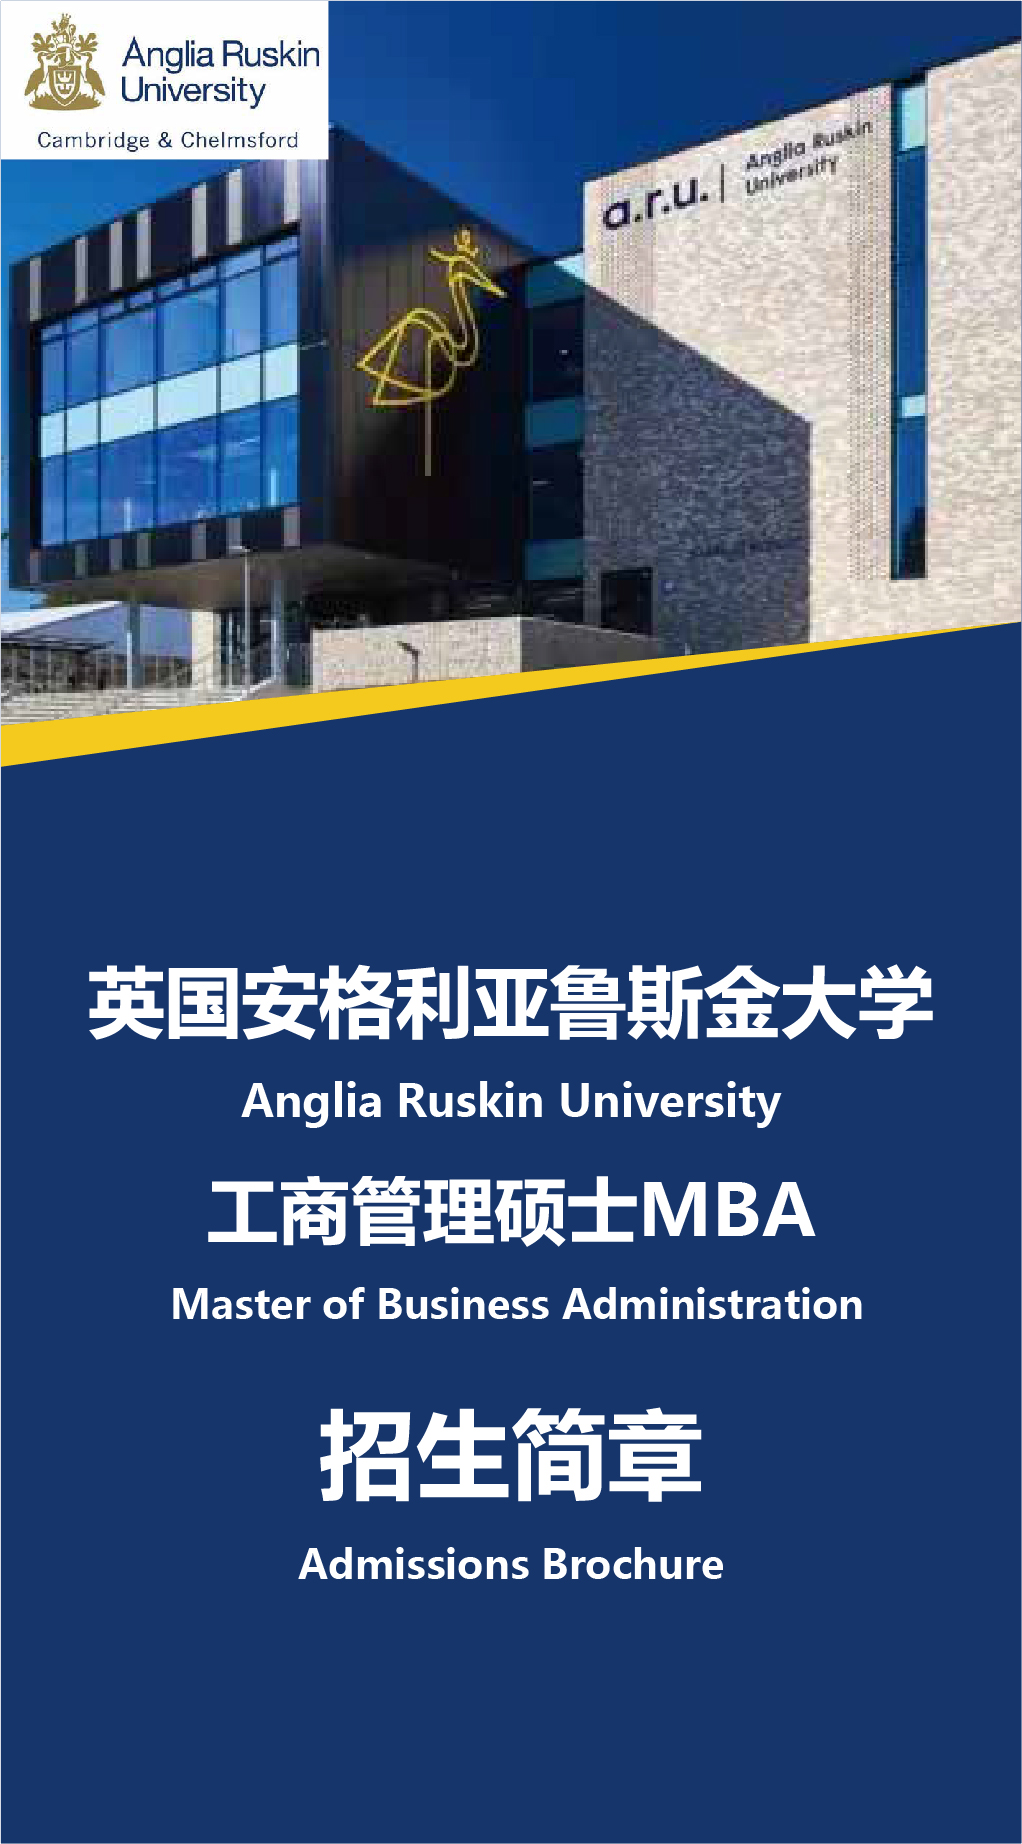 英国安格利亚鲁斯金大学MBA 加推-01